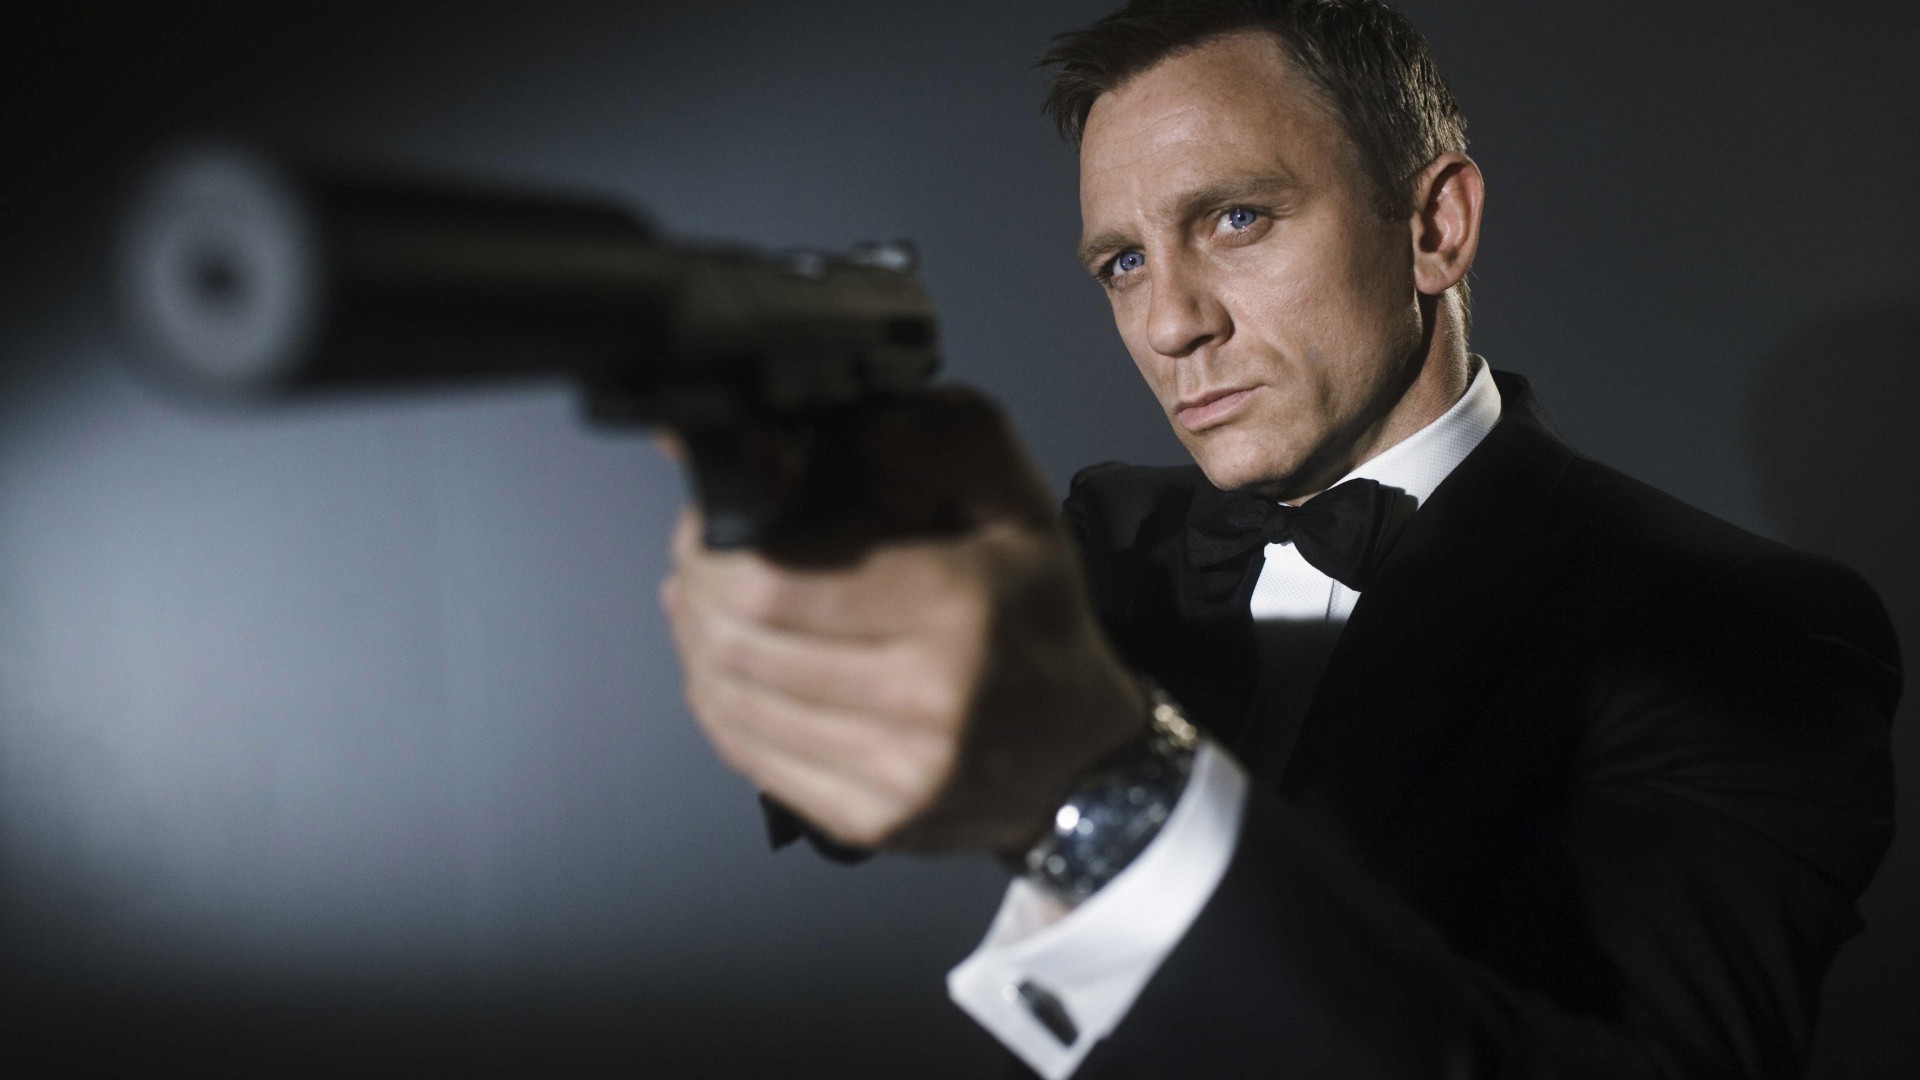 Дениел Крейг, Самые популярные знаменитости 2015, актер, пистолет, Daniel Craig, 007, James Bond, Most Popular Celebs in 2015, actor, gun (horizontal)